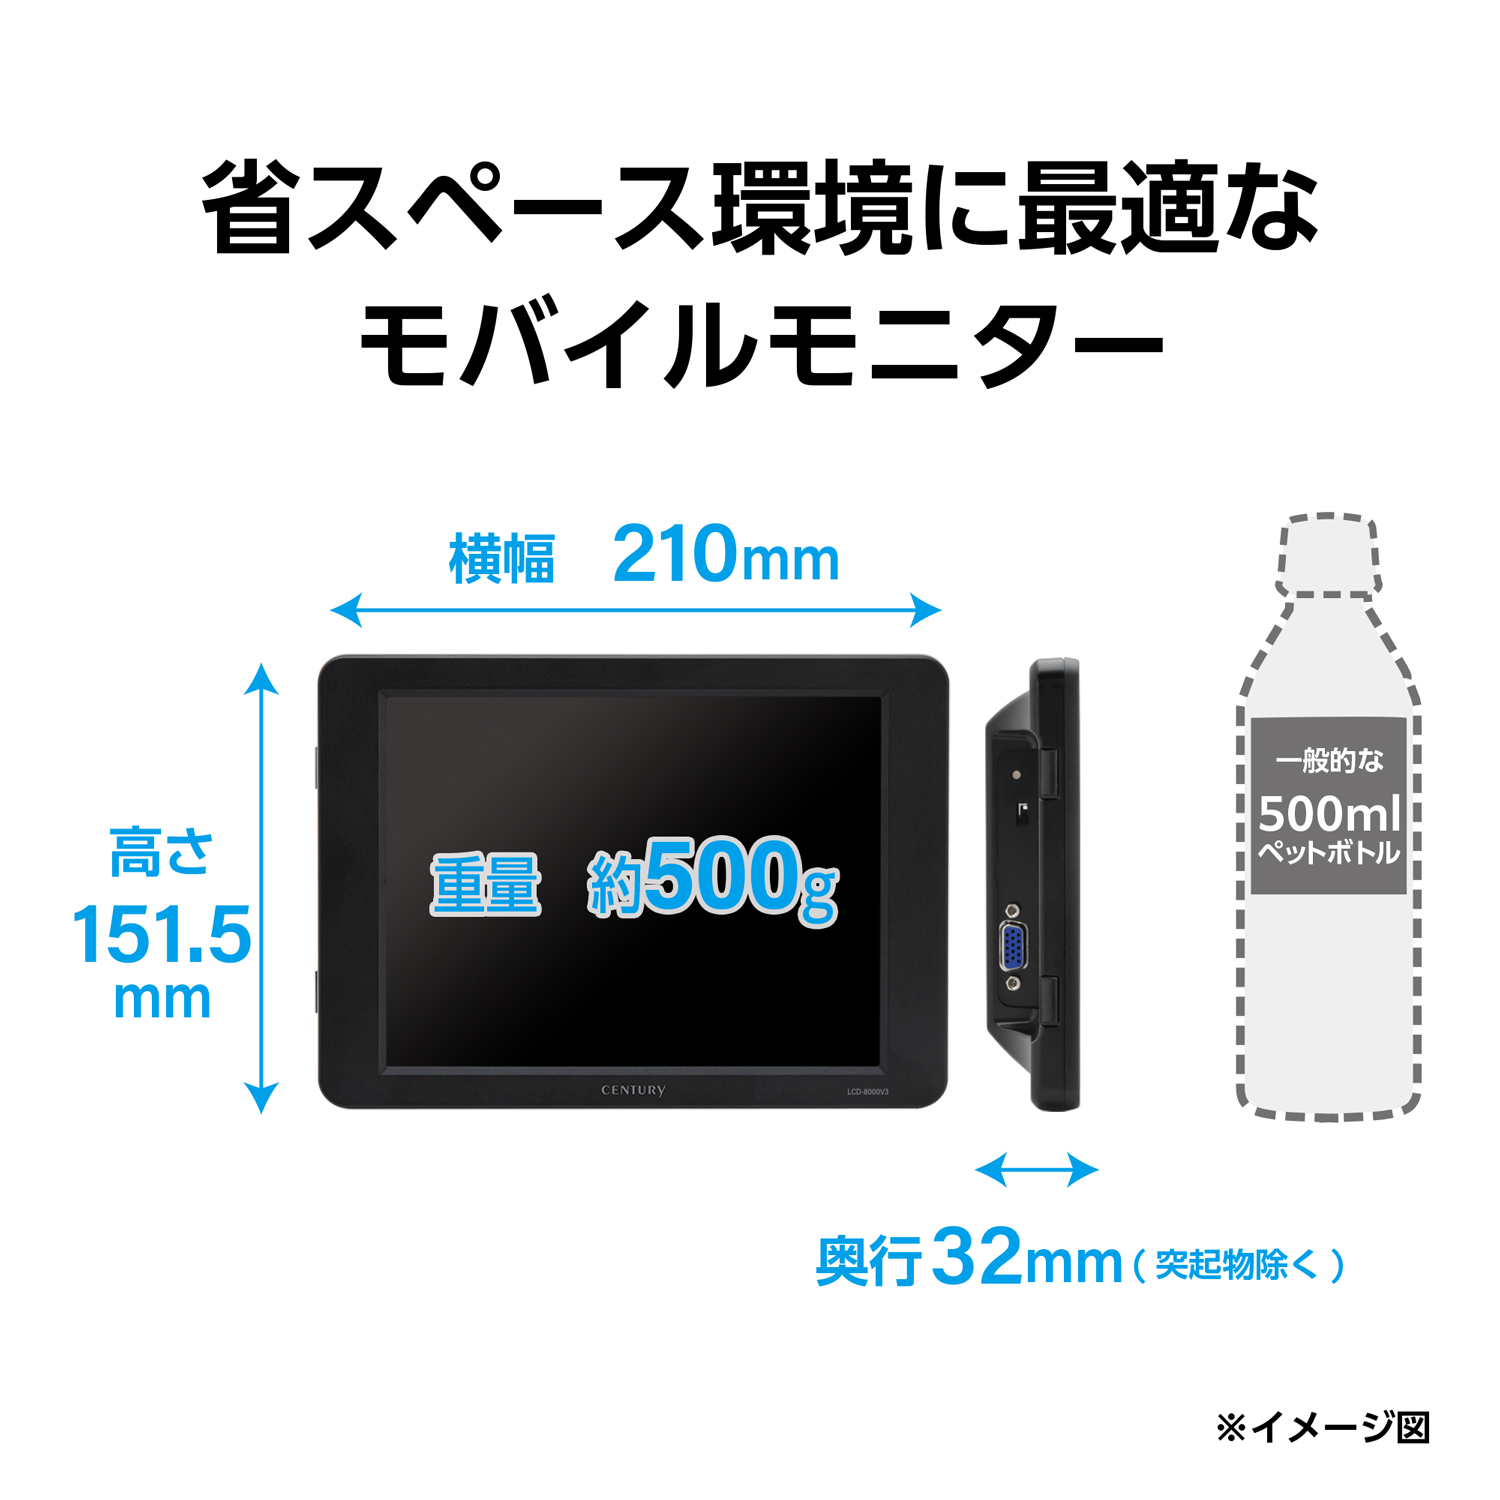 8インチアナログRGBモニター plus one VGA (LCD-8000V3B) - 株式会社